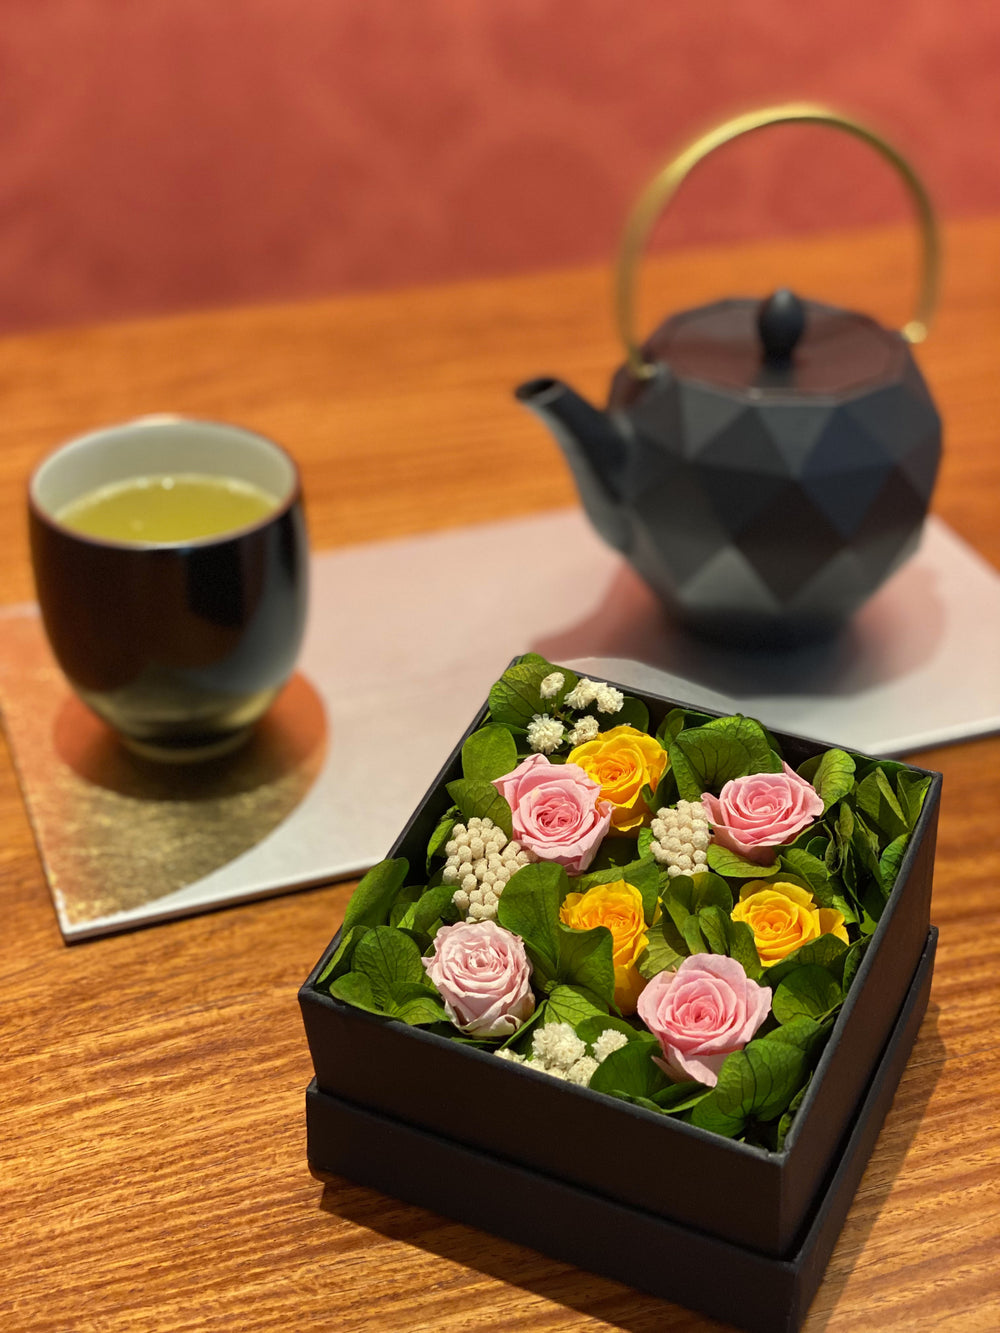 Le mariage de l'élégance française et de l'harmonie japonaise dans la bijouterie florale